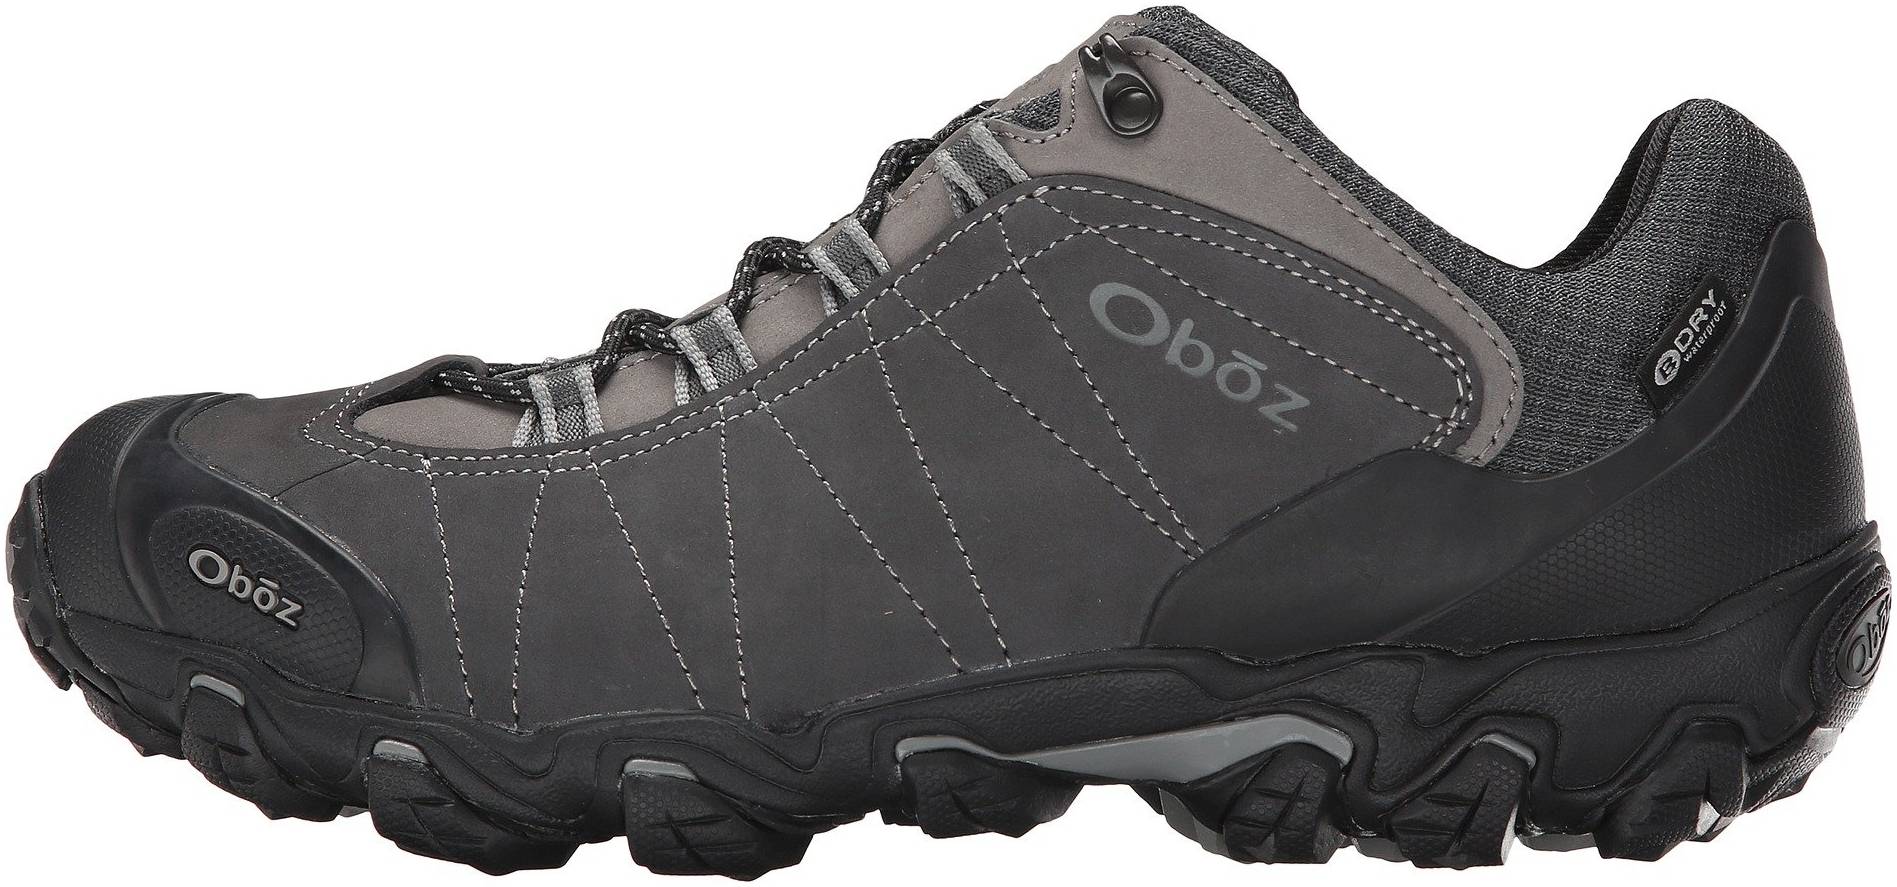 Brown Sports Outdoors Waterproof Oboz Mens Bridger Low B-DRY Walking Shoes 